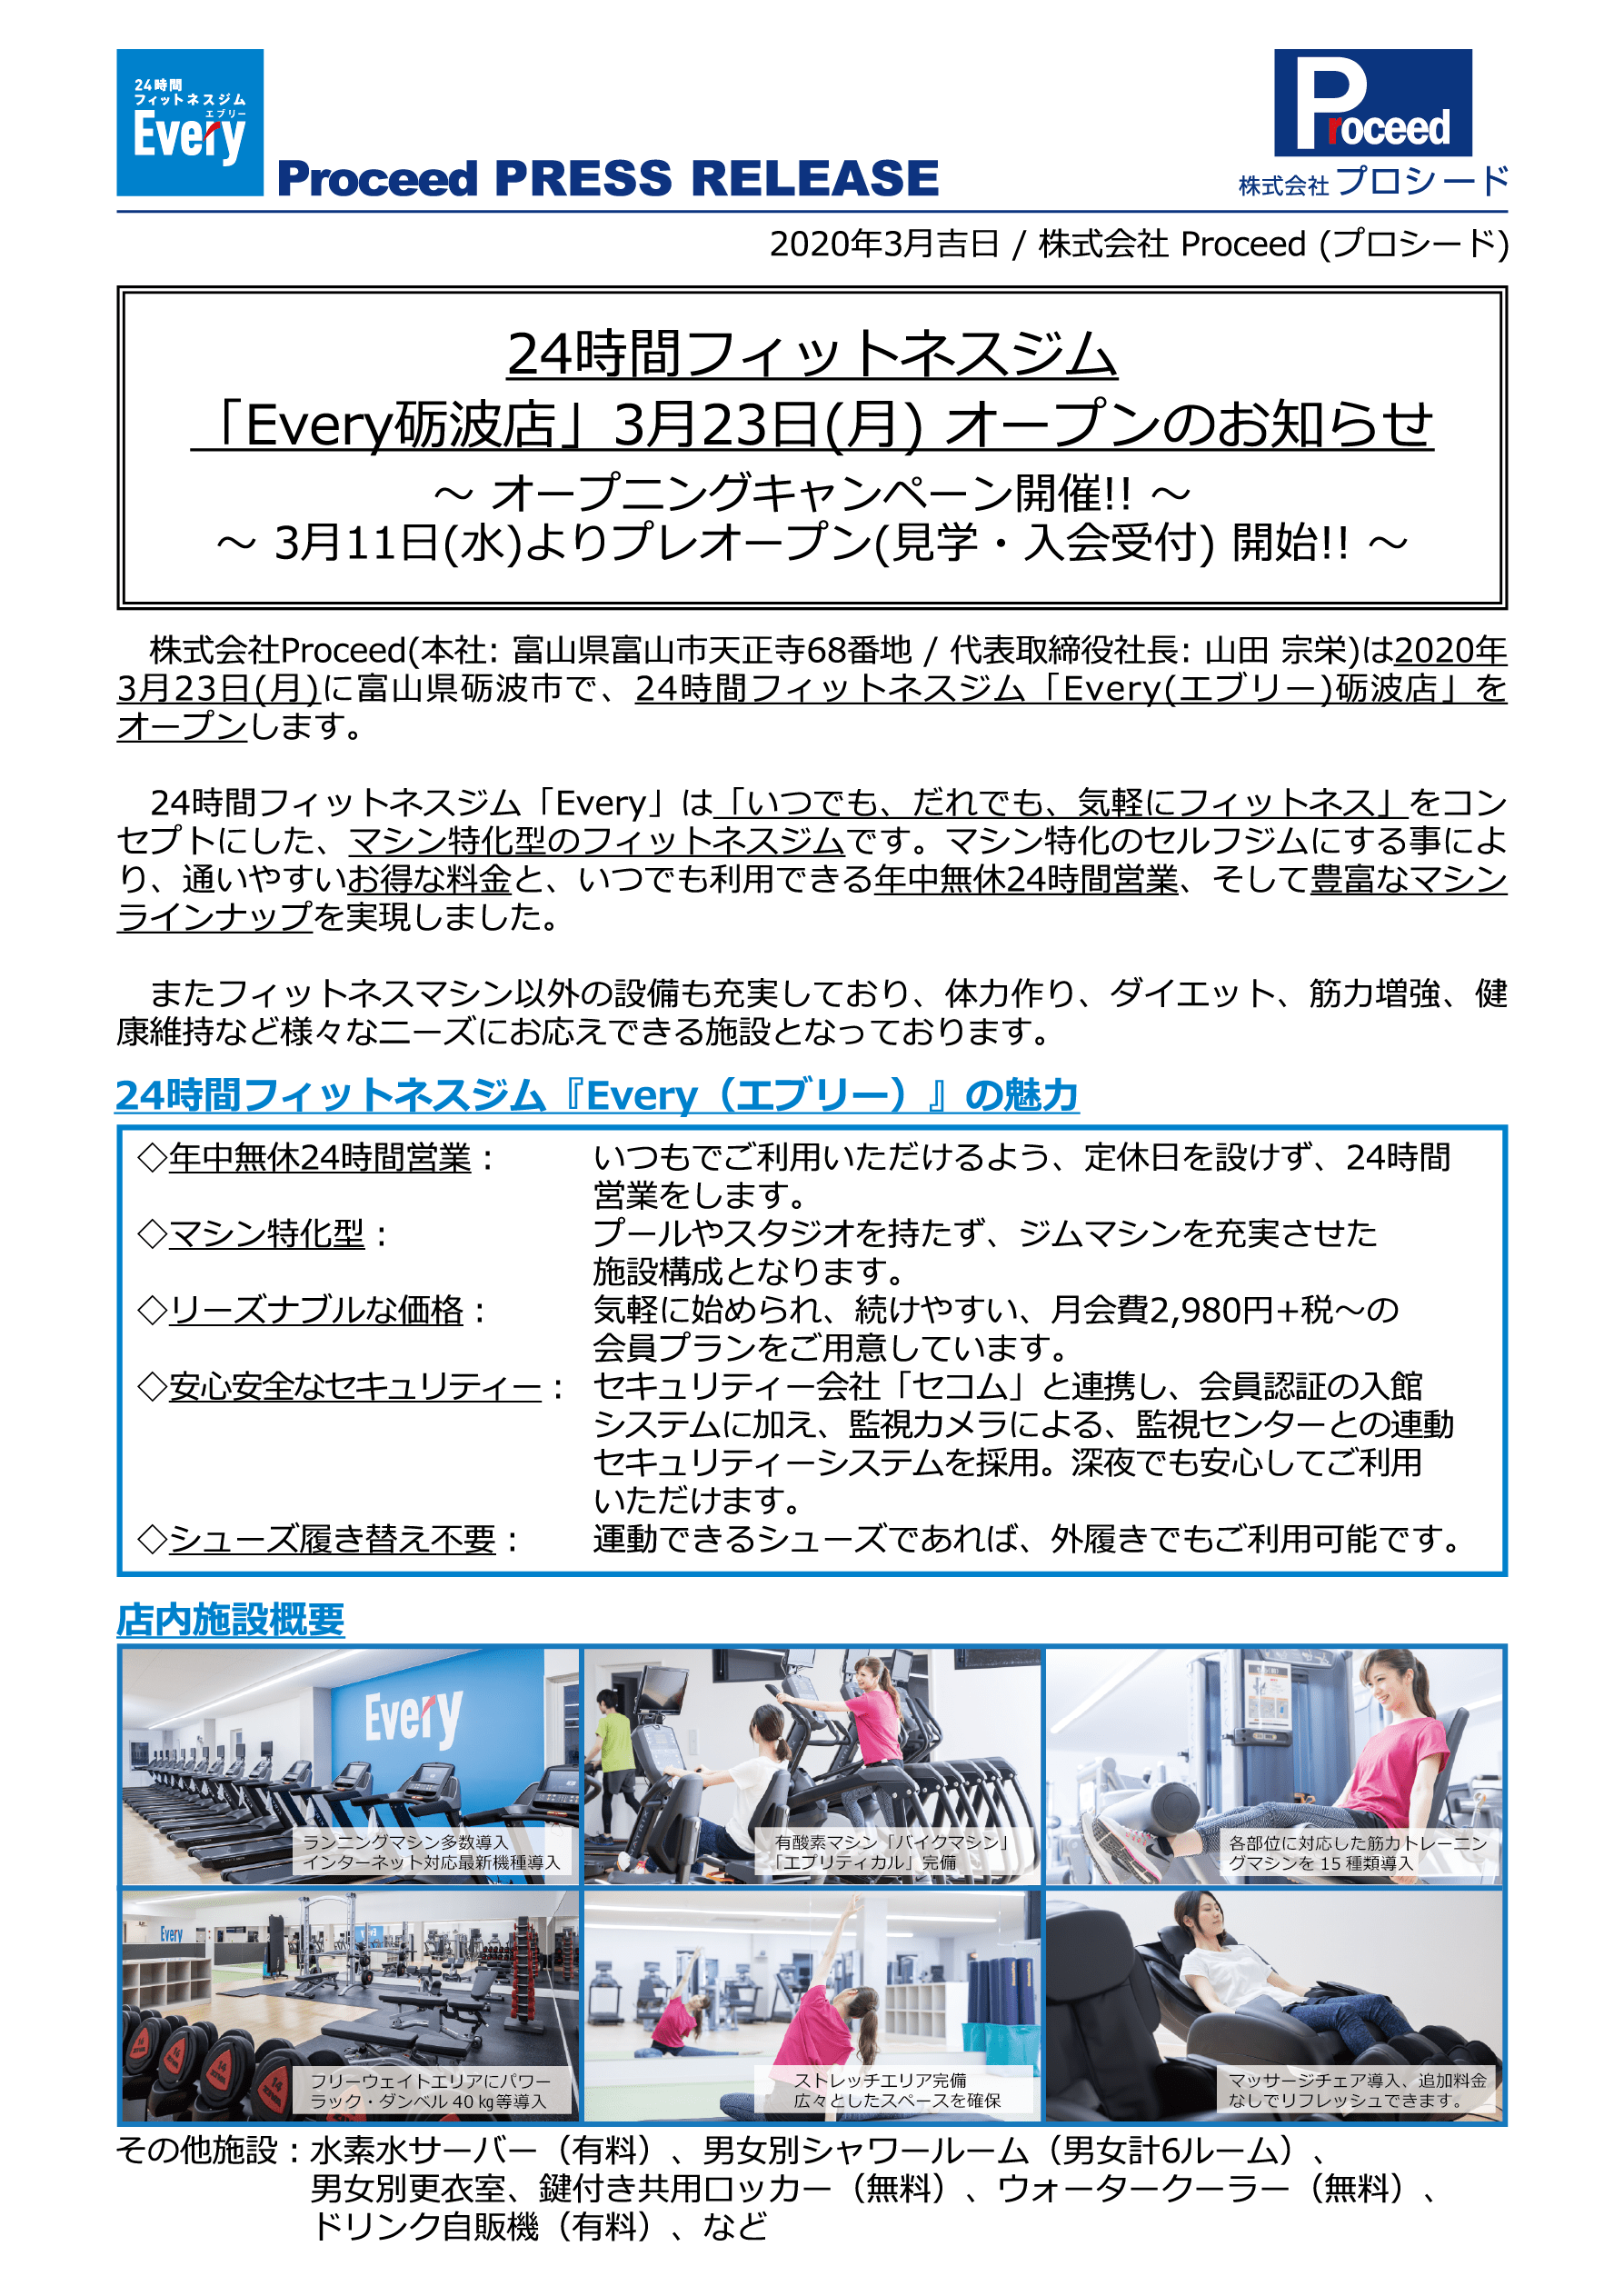 2020/3【プレスリリース】Every 砺波店 オープンのお知らせ 〜3/11(水)よりプレオープン開始!! 〜 1